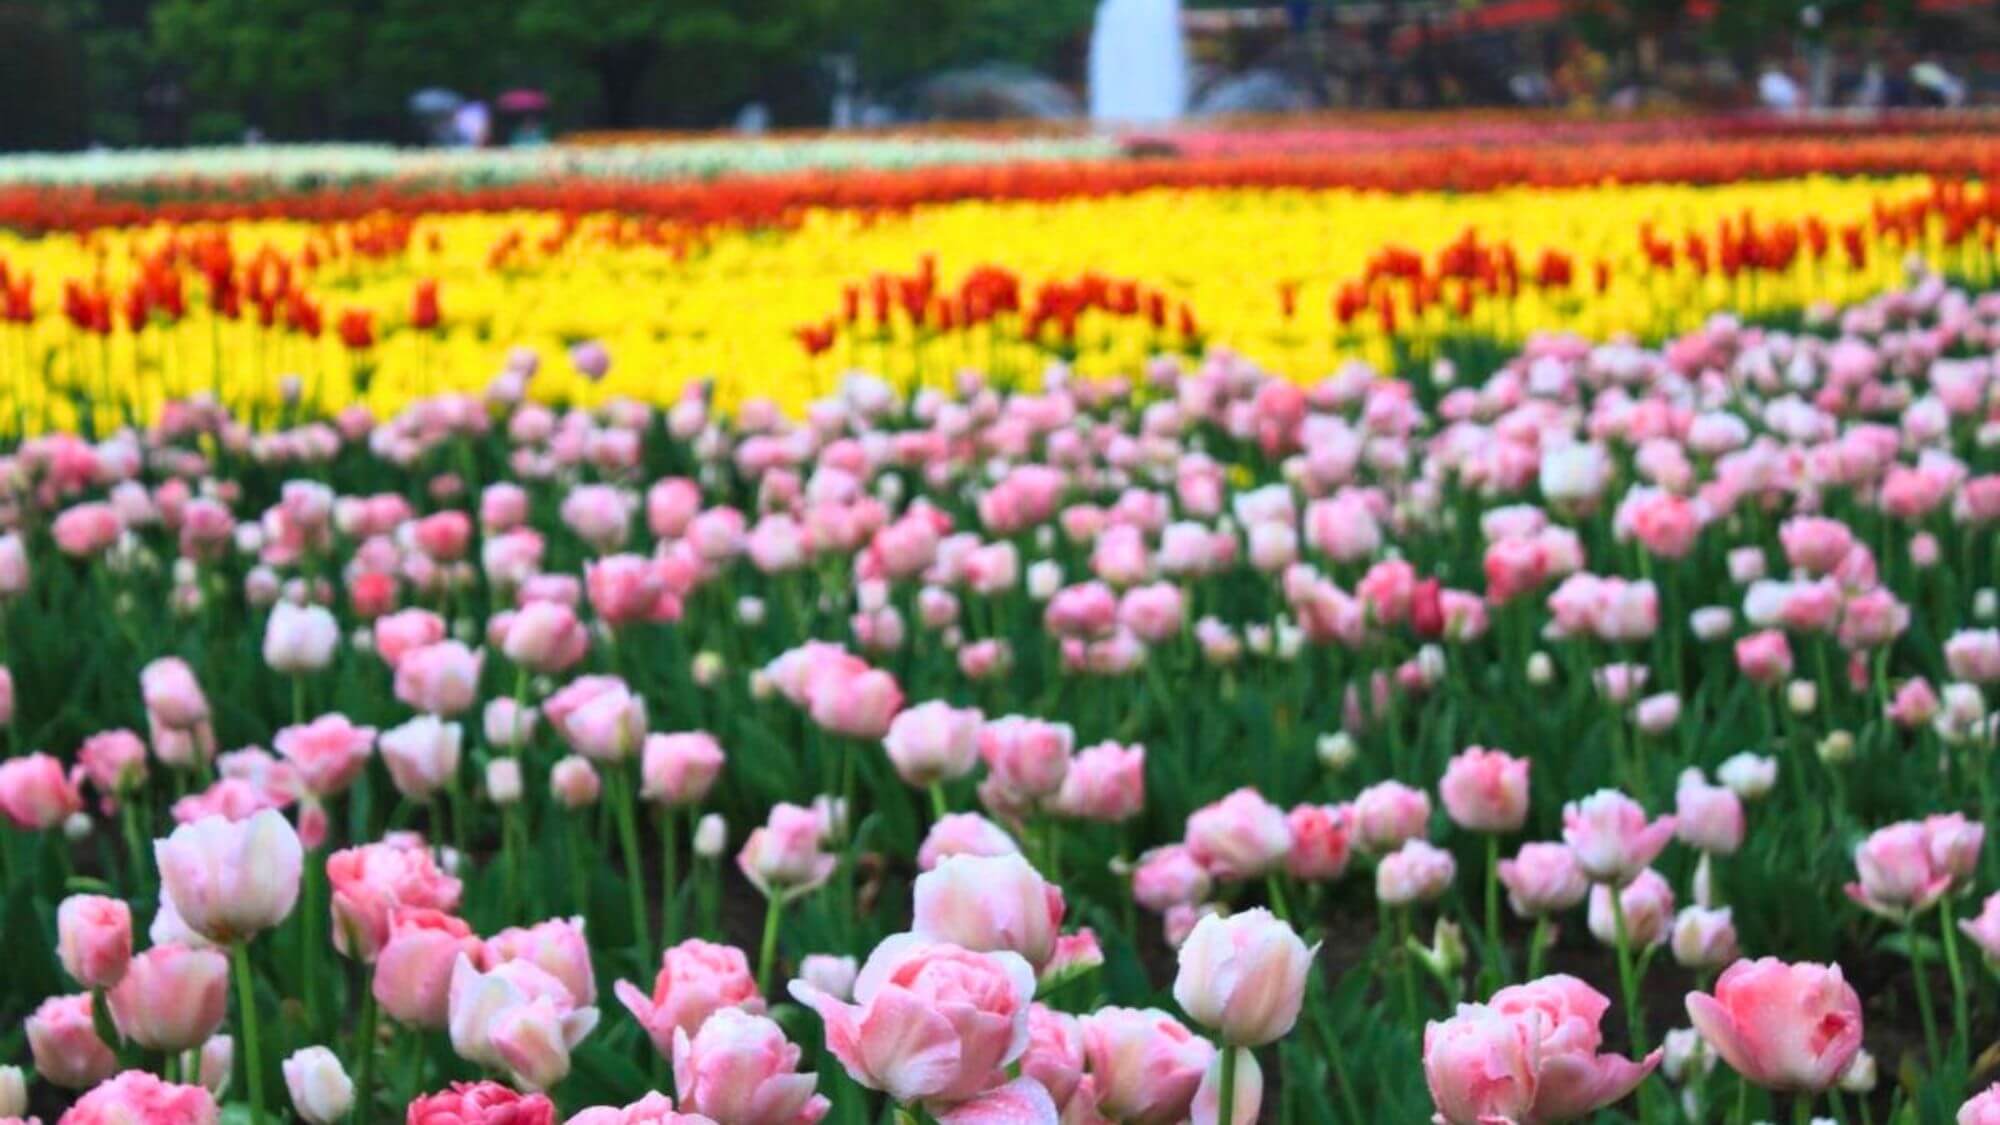 【となみチューリップフェア】300品種300万本が咲きそろう、日本一の規模のチューリップの祭典です。